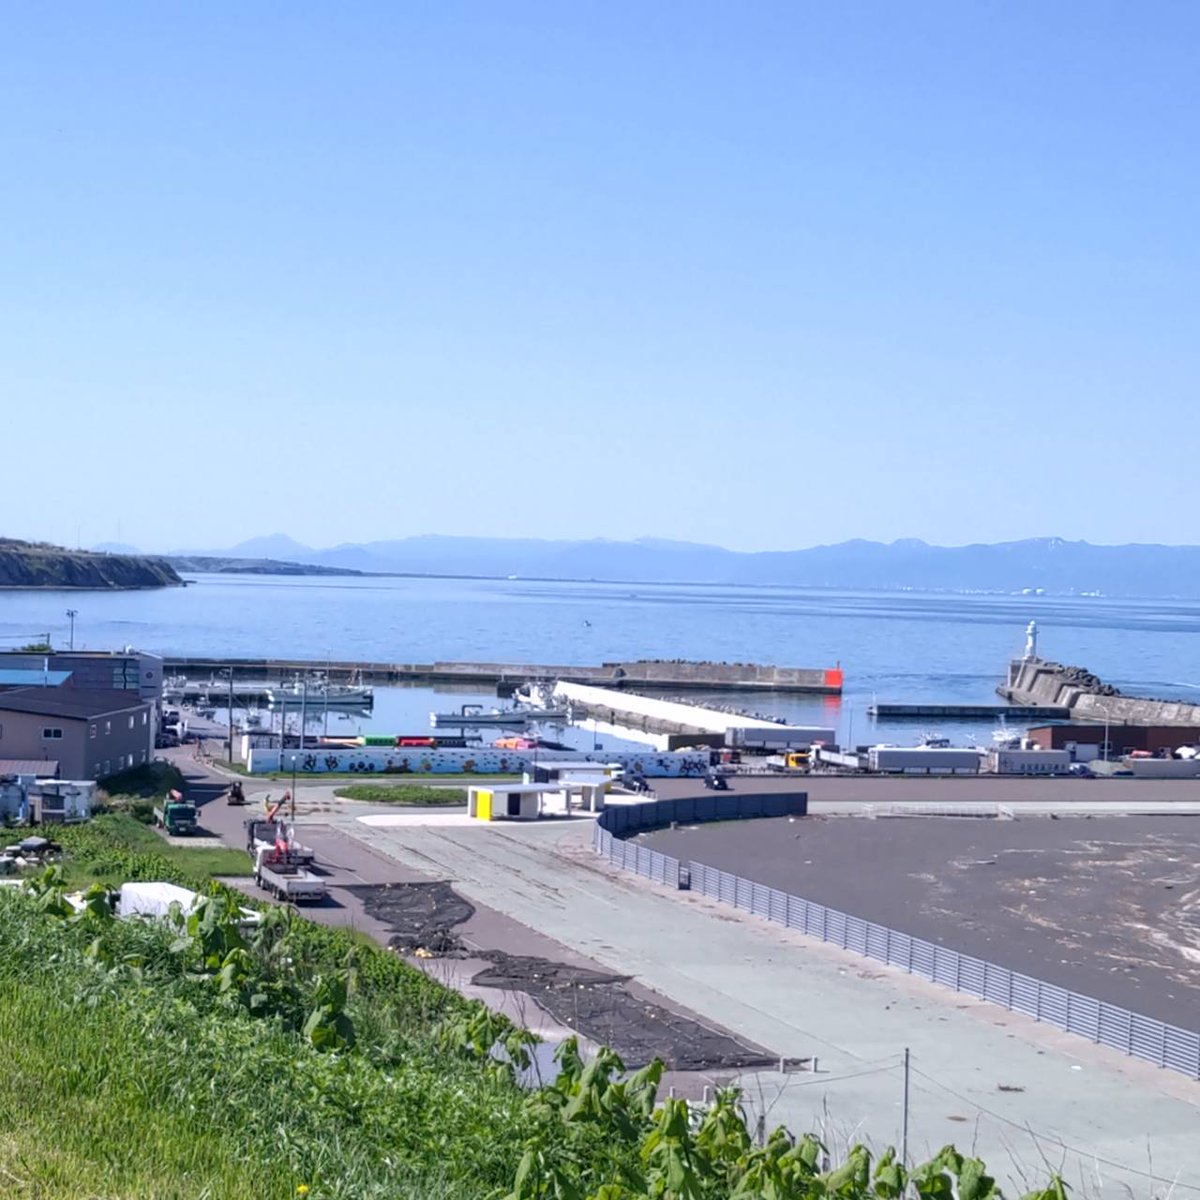 ねこ道楽の近くにある北海道の厚田漁港の写真です*ฅ´ω`ฅ* 厚田はニシン漁が盛んに行われた歴史があり、1706年から1955年と長期に渡ります。現在でも、港では朝市を行っており、新鮮な魚が販売されています。孤独のグルメのロケ地にもなりました✨ #海 #厚田 #北海道 #札幌 #漁港 #自然 #孤独のグルメ